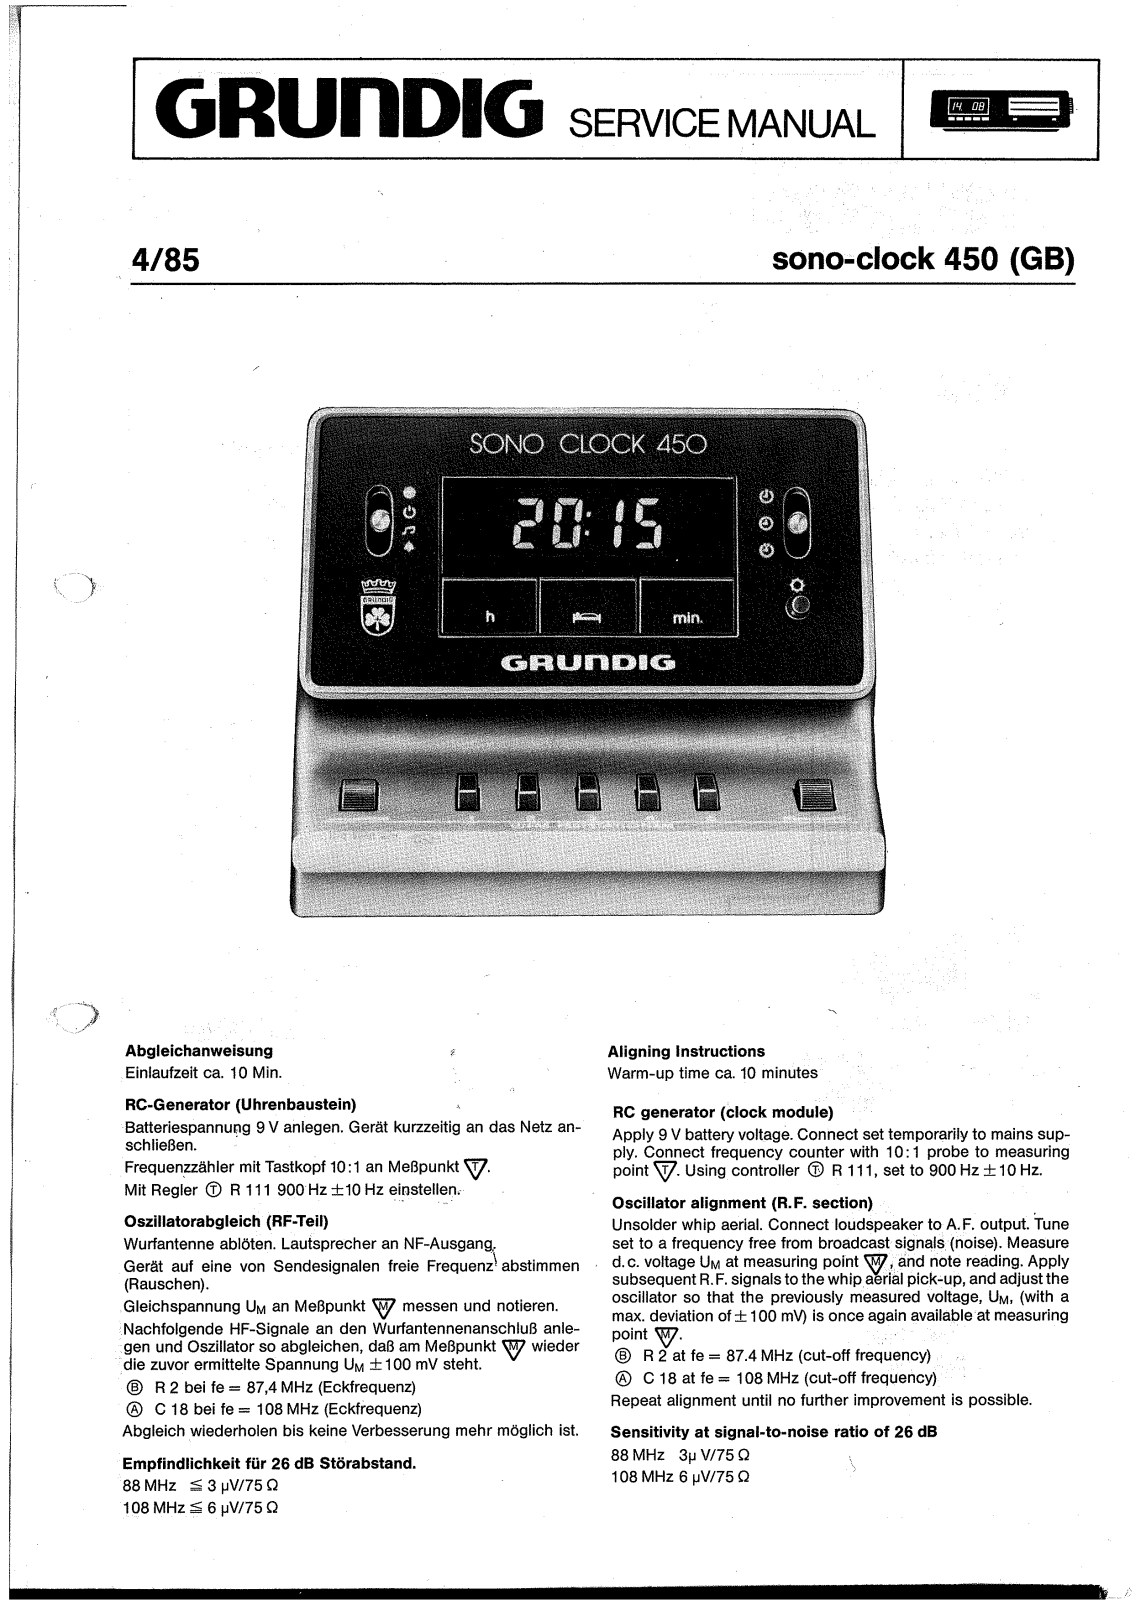 Grundig Sonoclock-450 Service Manual